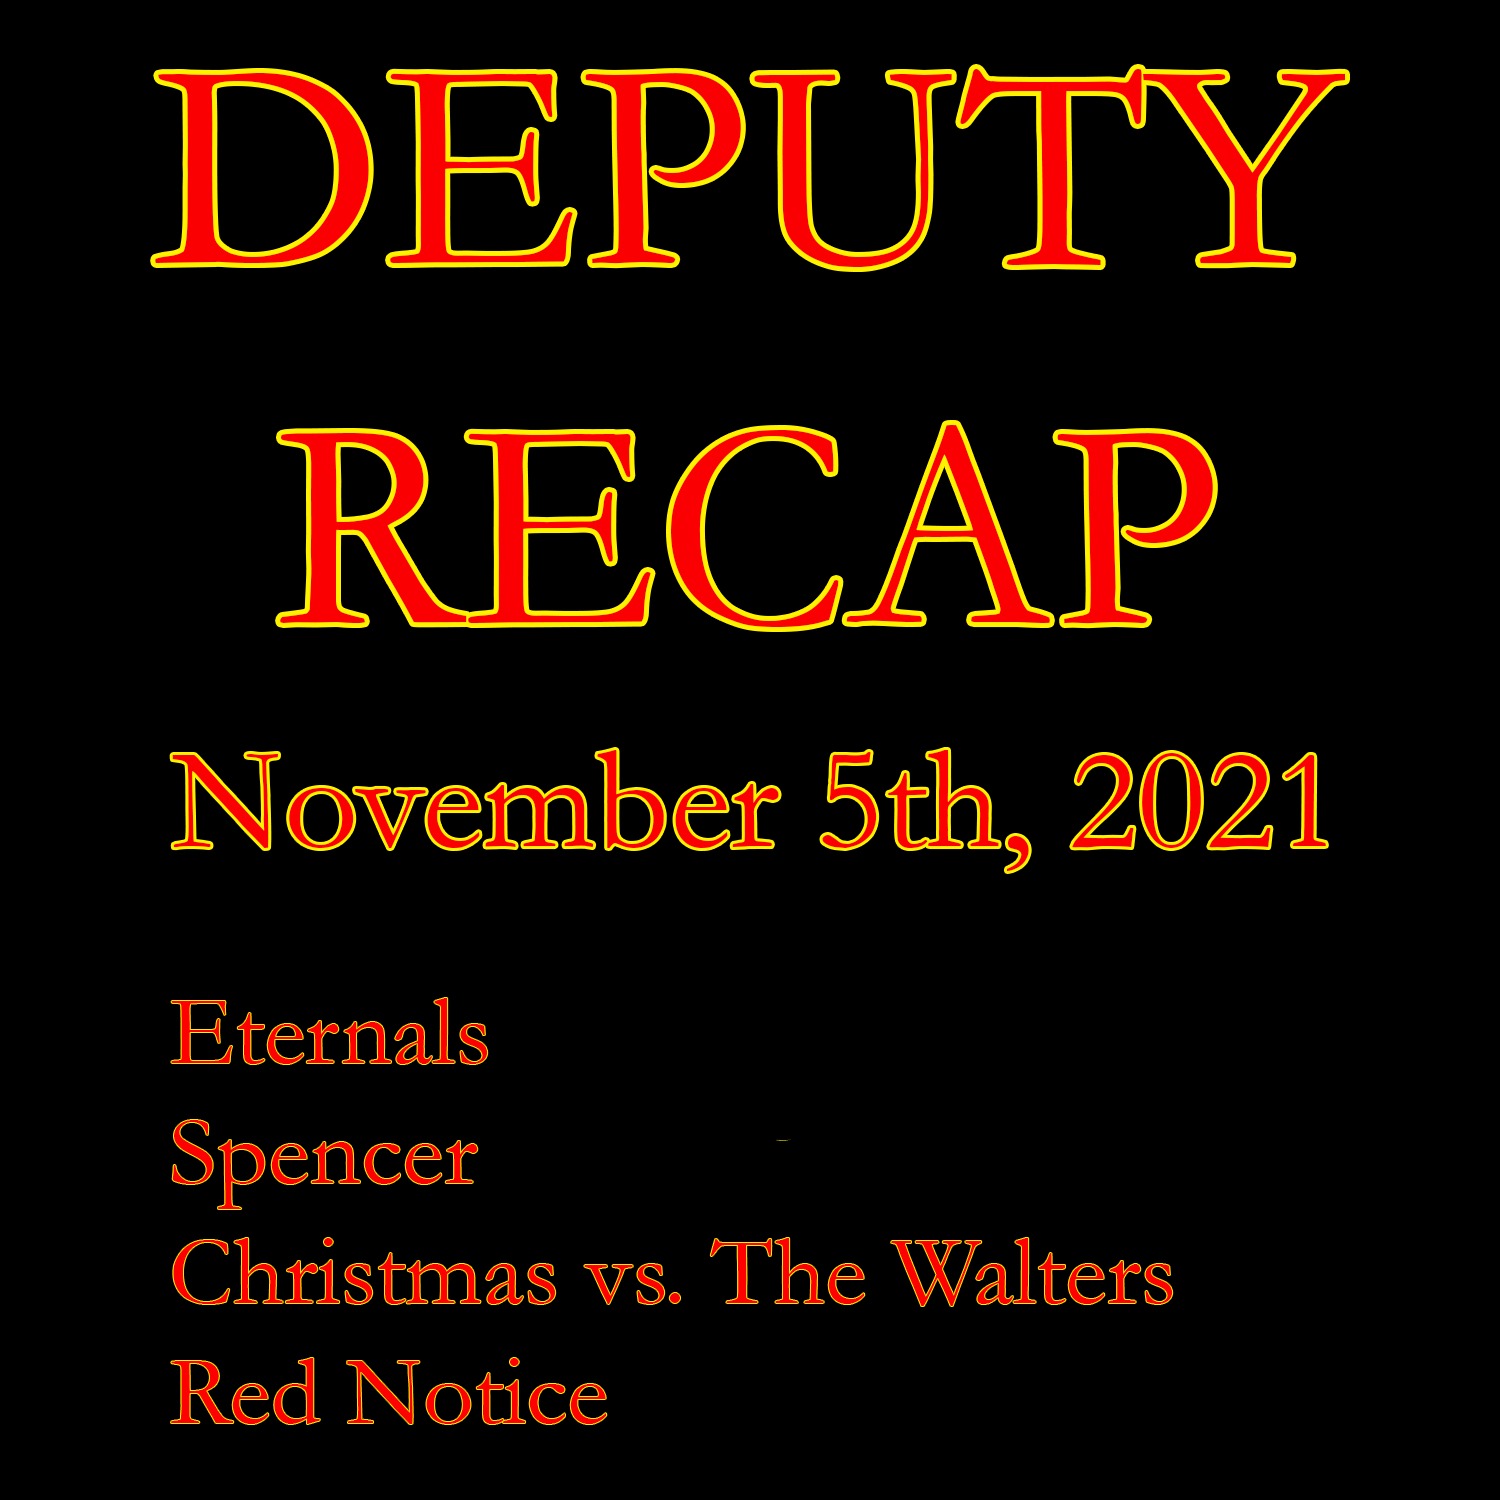 Recap - November 5th, 2021